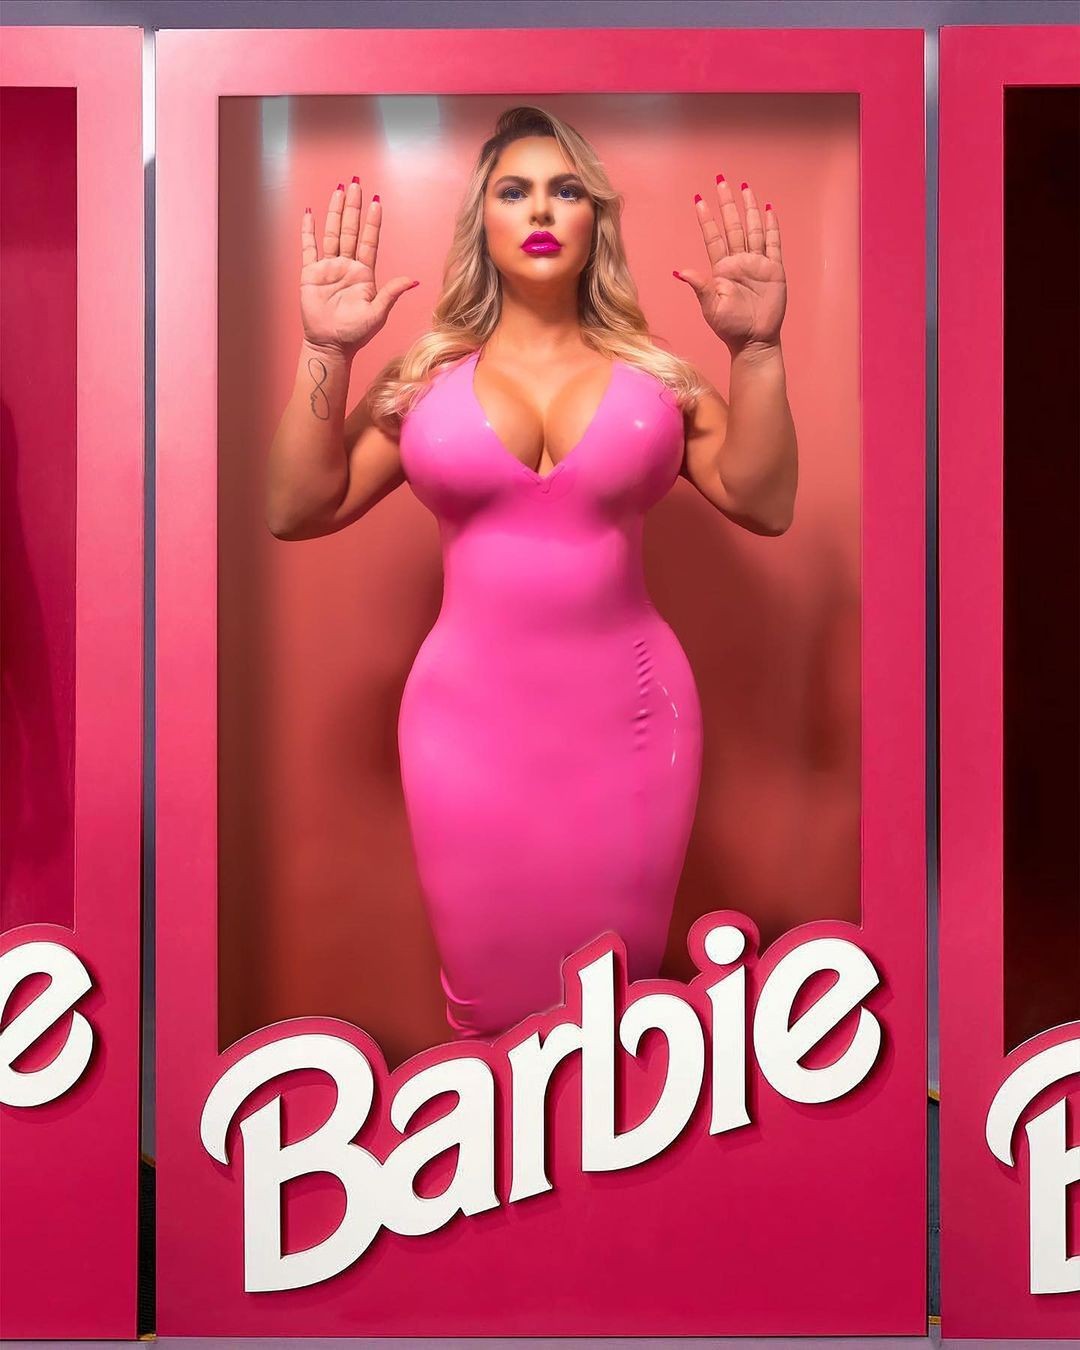 Modelo plus size se veste de Barbie e pede bonecas com corpos de verdade (Foto: Instagram)